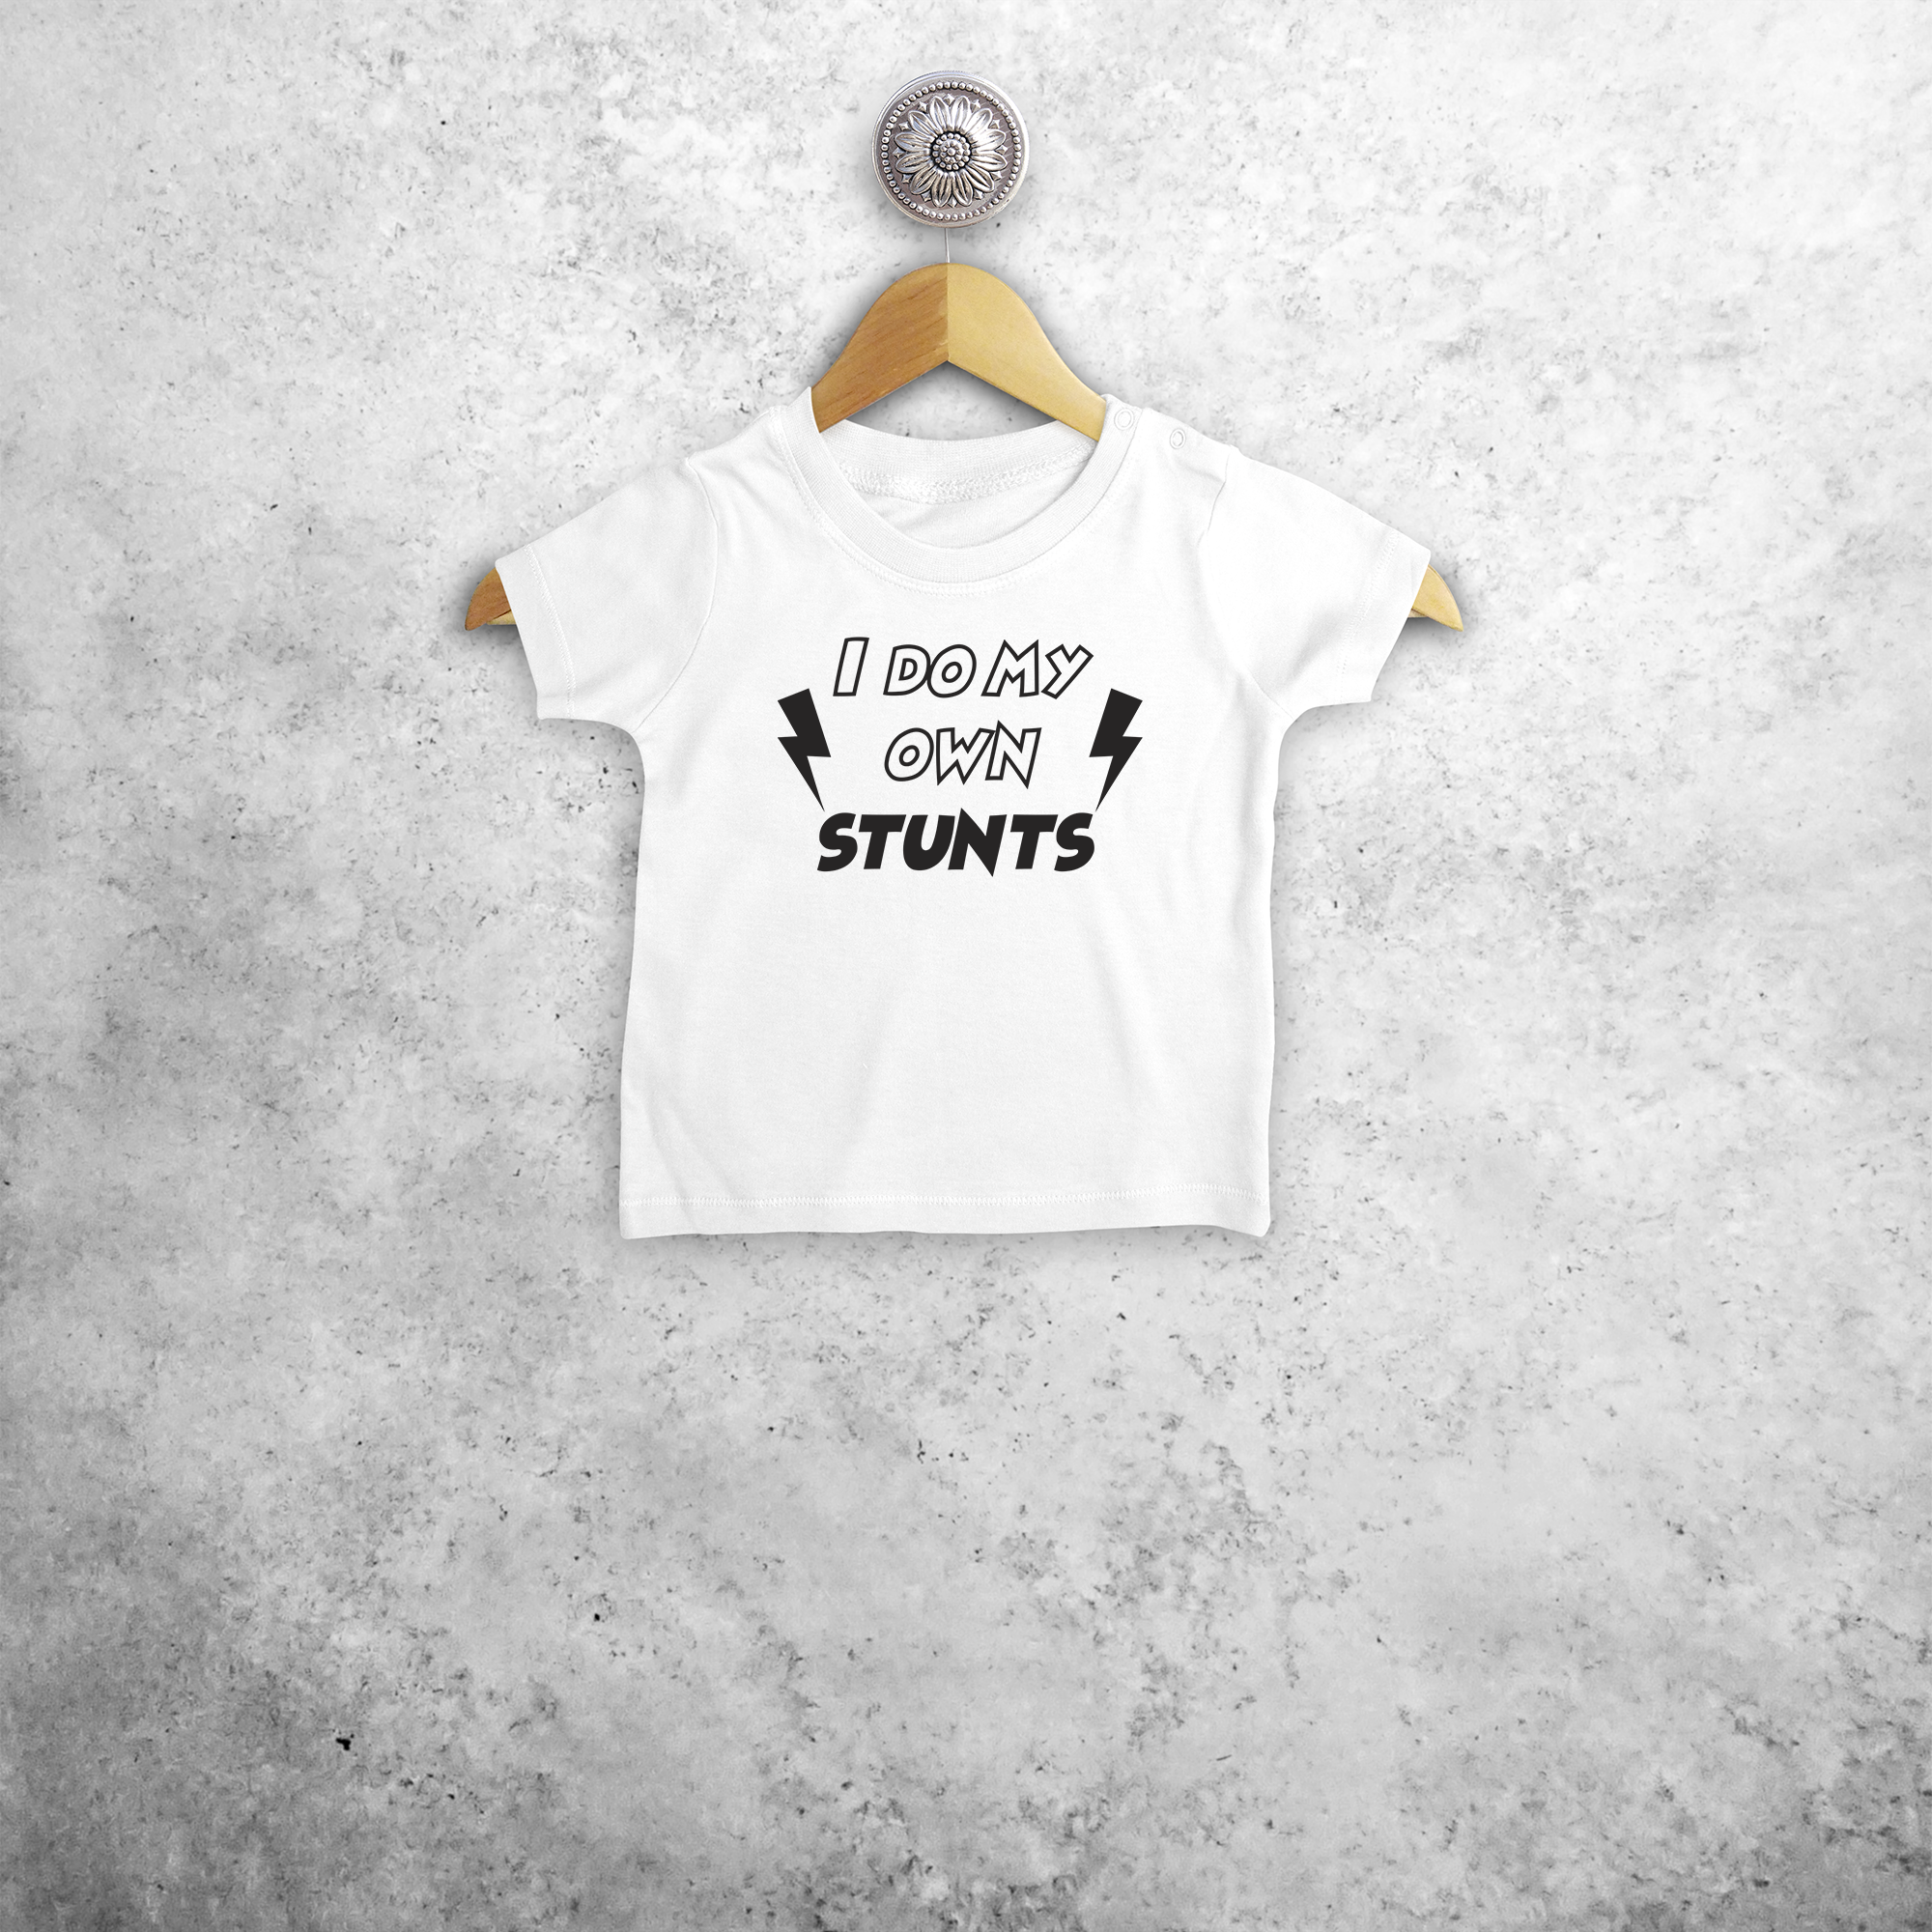 'I do my own stunts' baby shortsleeve shirt